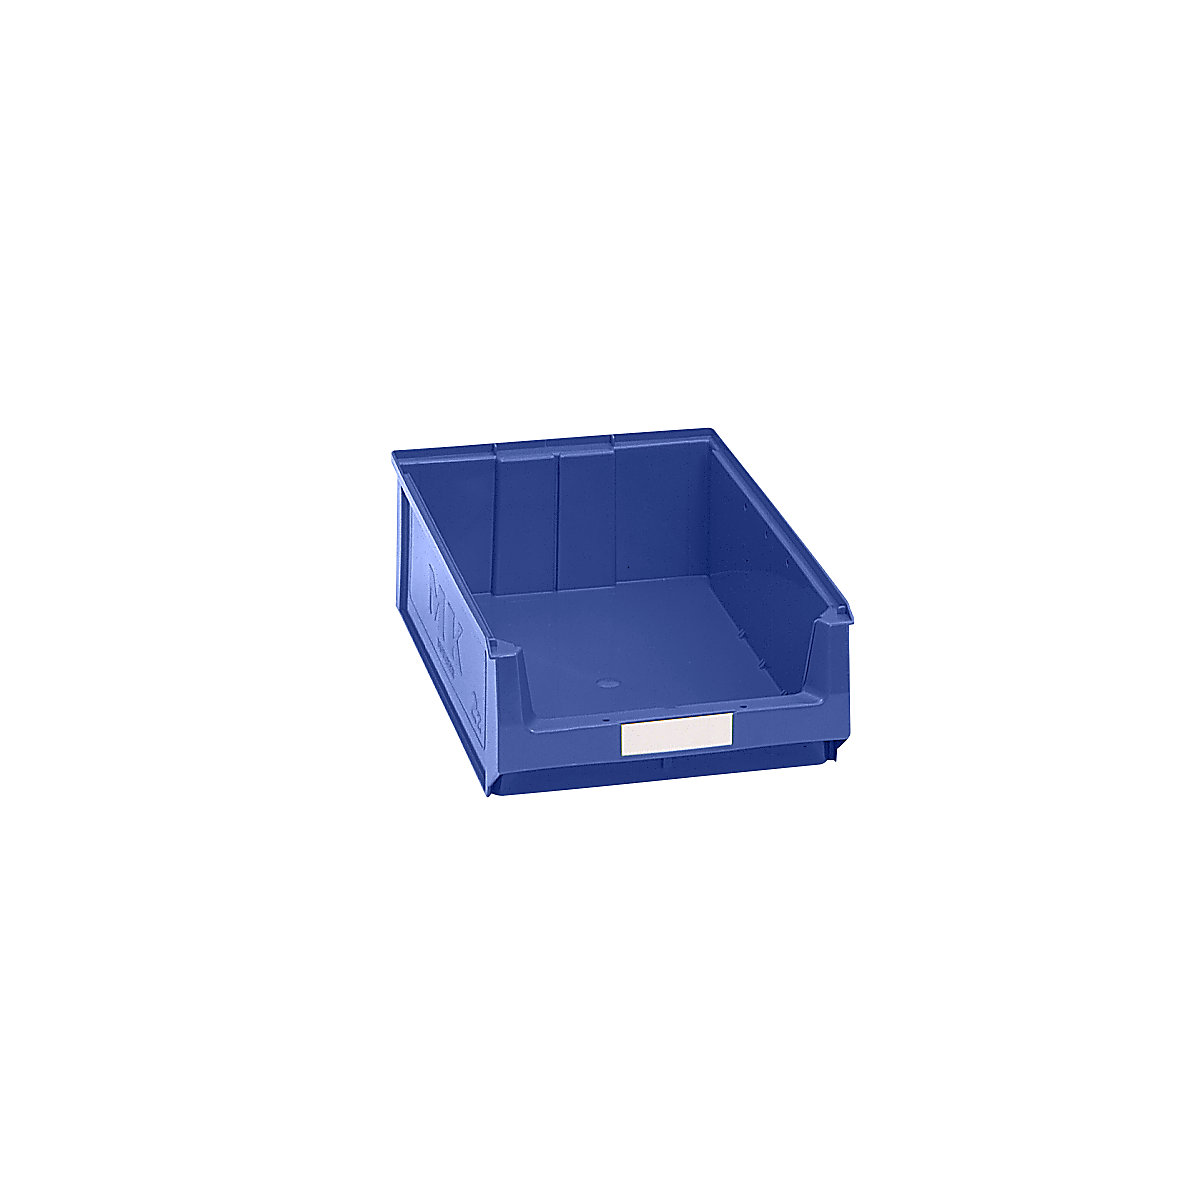 Caixa de armazenagem à vista em polietileno – mauser, CxLxA 500 x 310 x 140 mm, azul, embalagem com 14 unidades-8